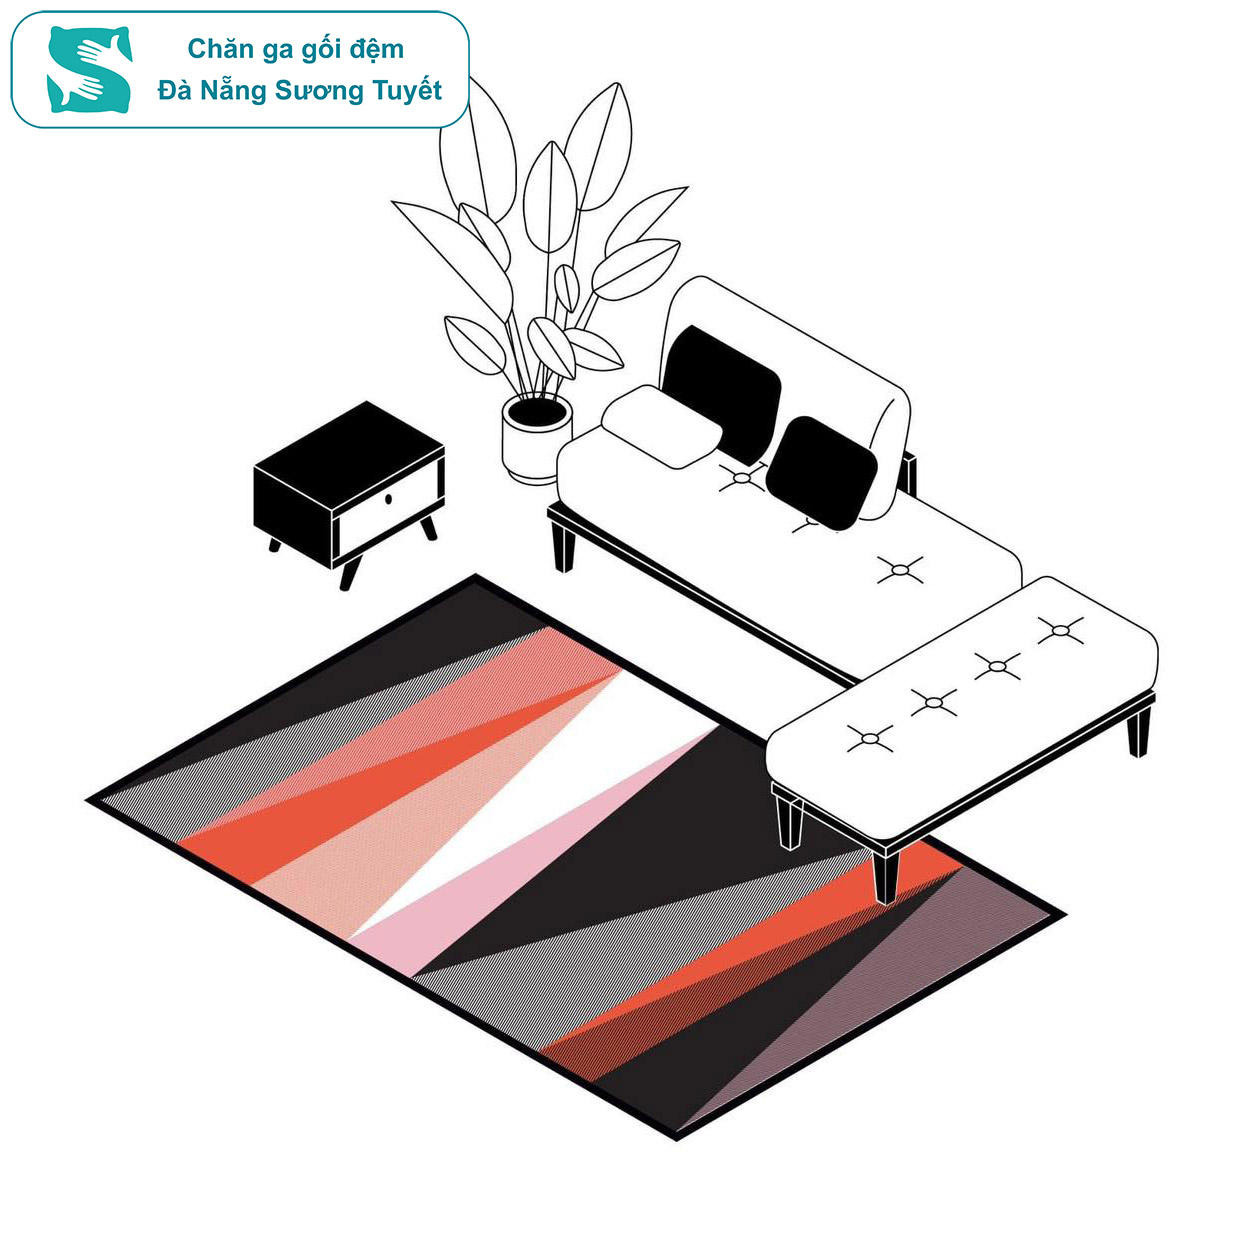 Đặt sofa đè lên mép của thảm để cố định thảm và tạo hiệu ứng 2/3 trong nhiếp ảnh mang đến sự cân đối.